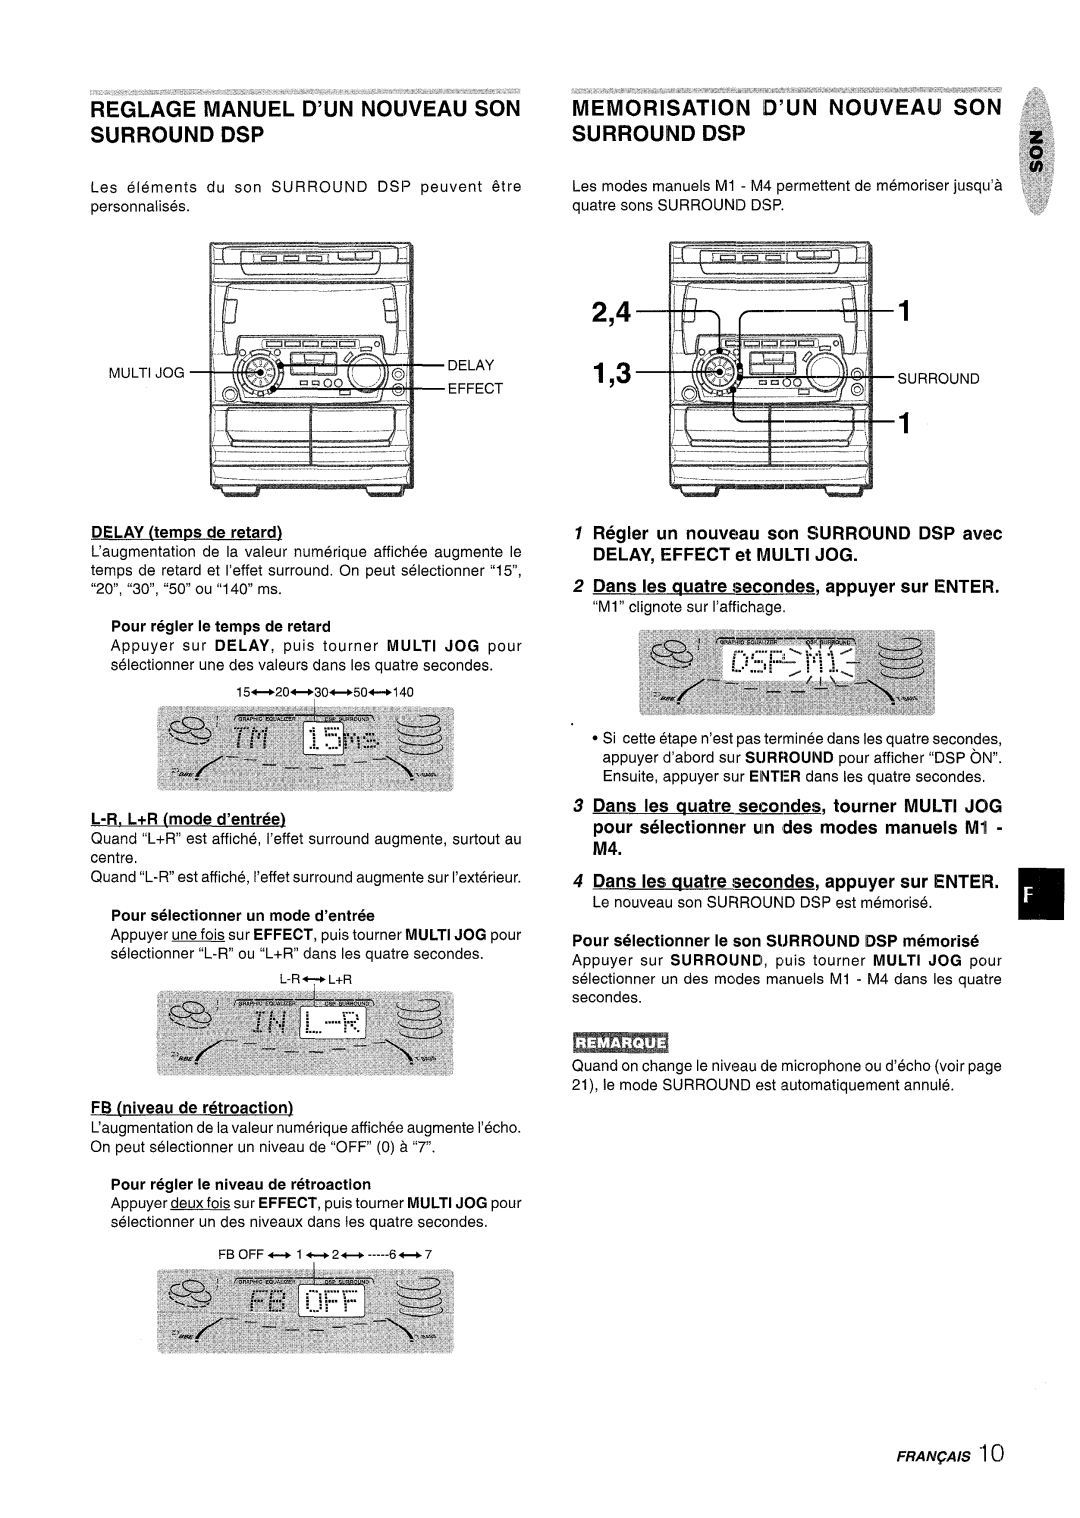 Sony NSX-A707 2,4 1,3, Reglage Manuel D’Un Nouveau Son Surround Dsp, DSP avec, Dans Ies quatre secondes, appuyer sur ENTER 